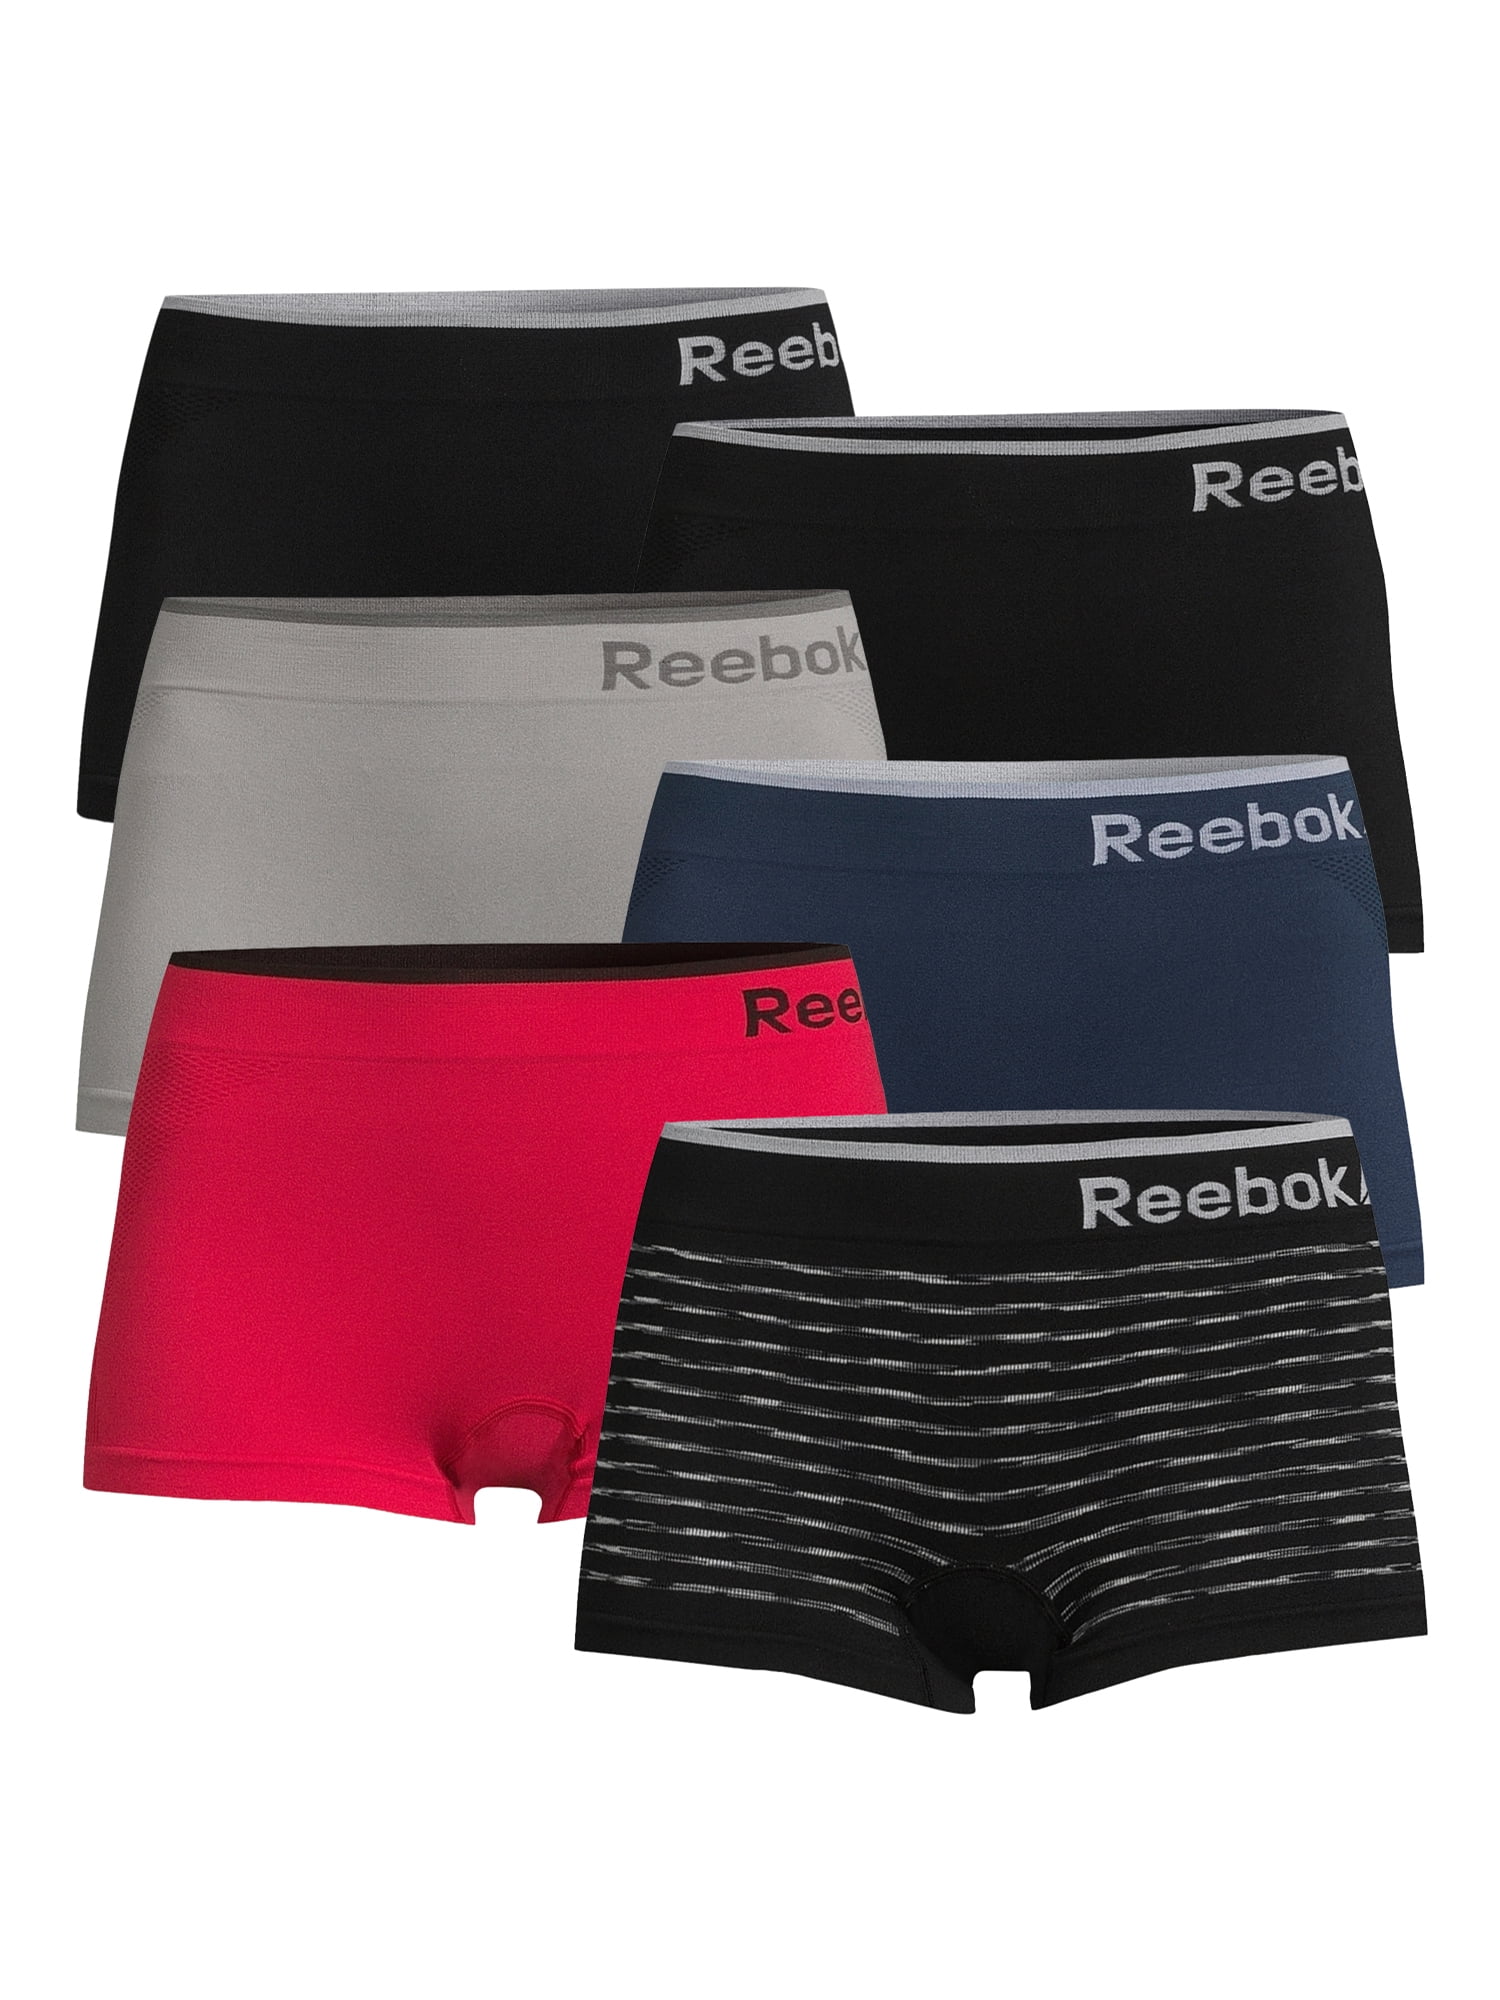  Reebok Women''s Underwear – Seamless Hipster Briefs (5